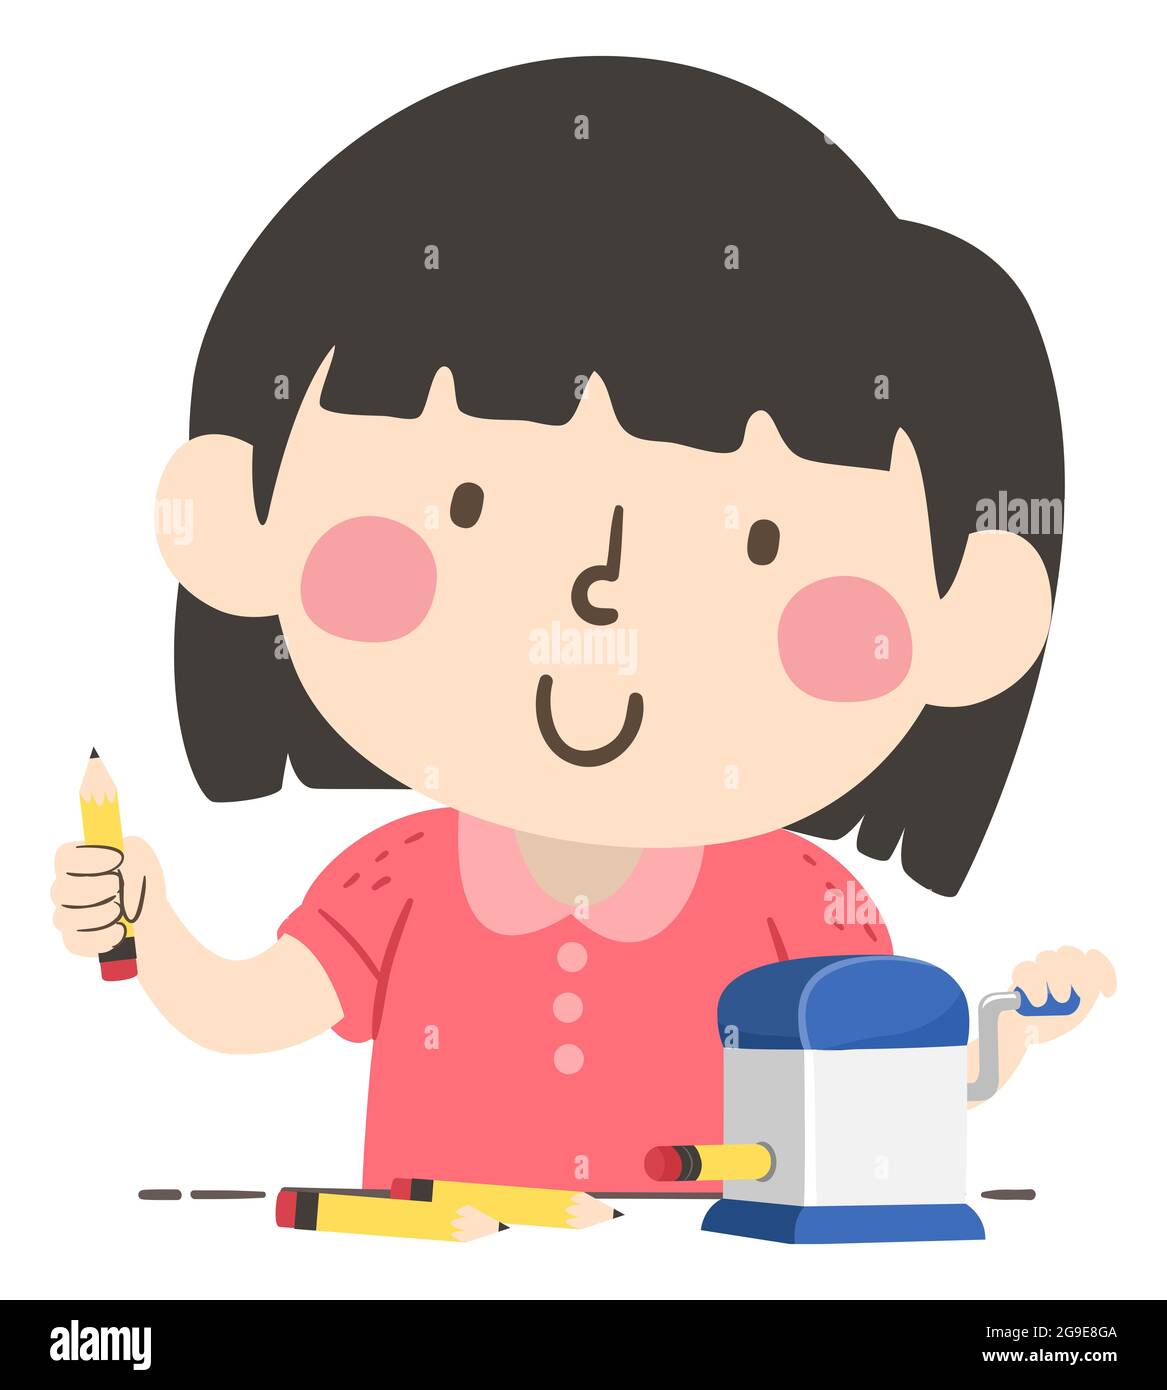 Ilustración de un Lápiz de Niña Kid como Patrulla de Lápices, un Trabajo en el Aula Foto de stock